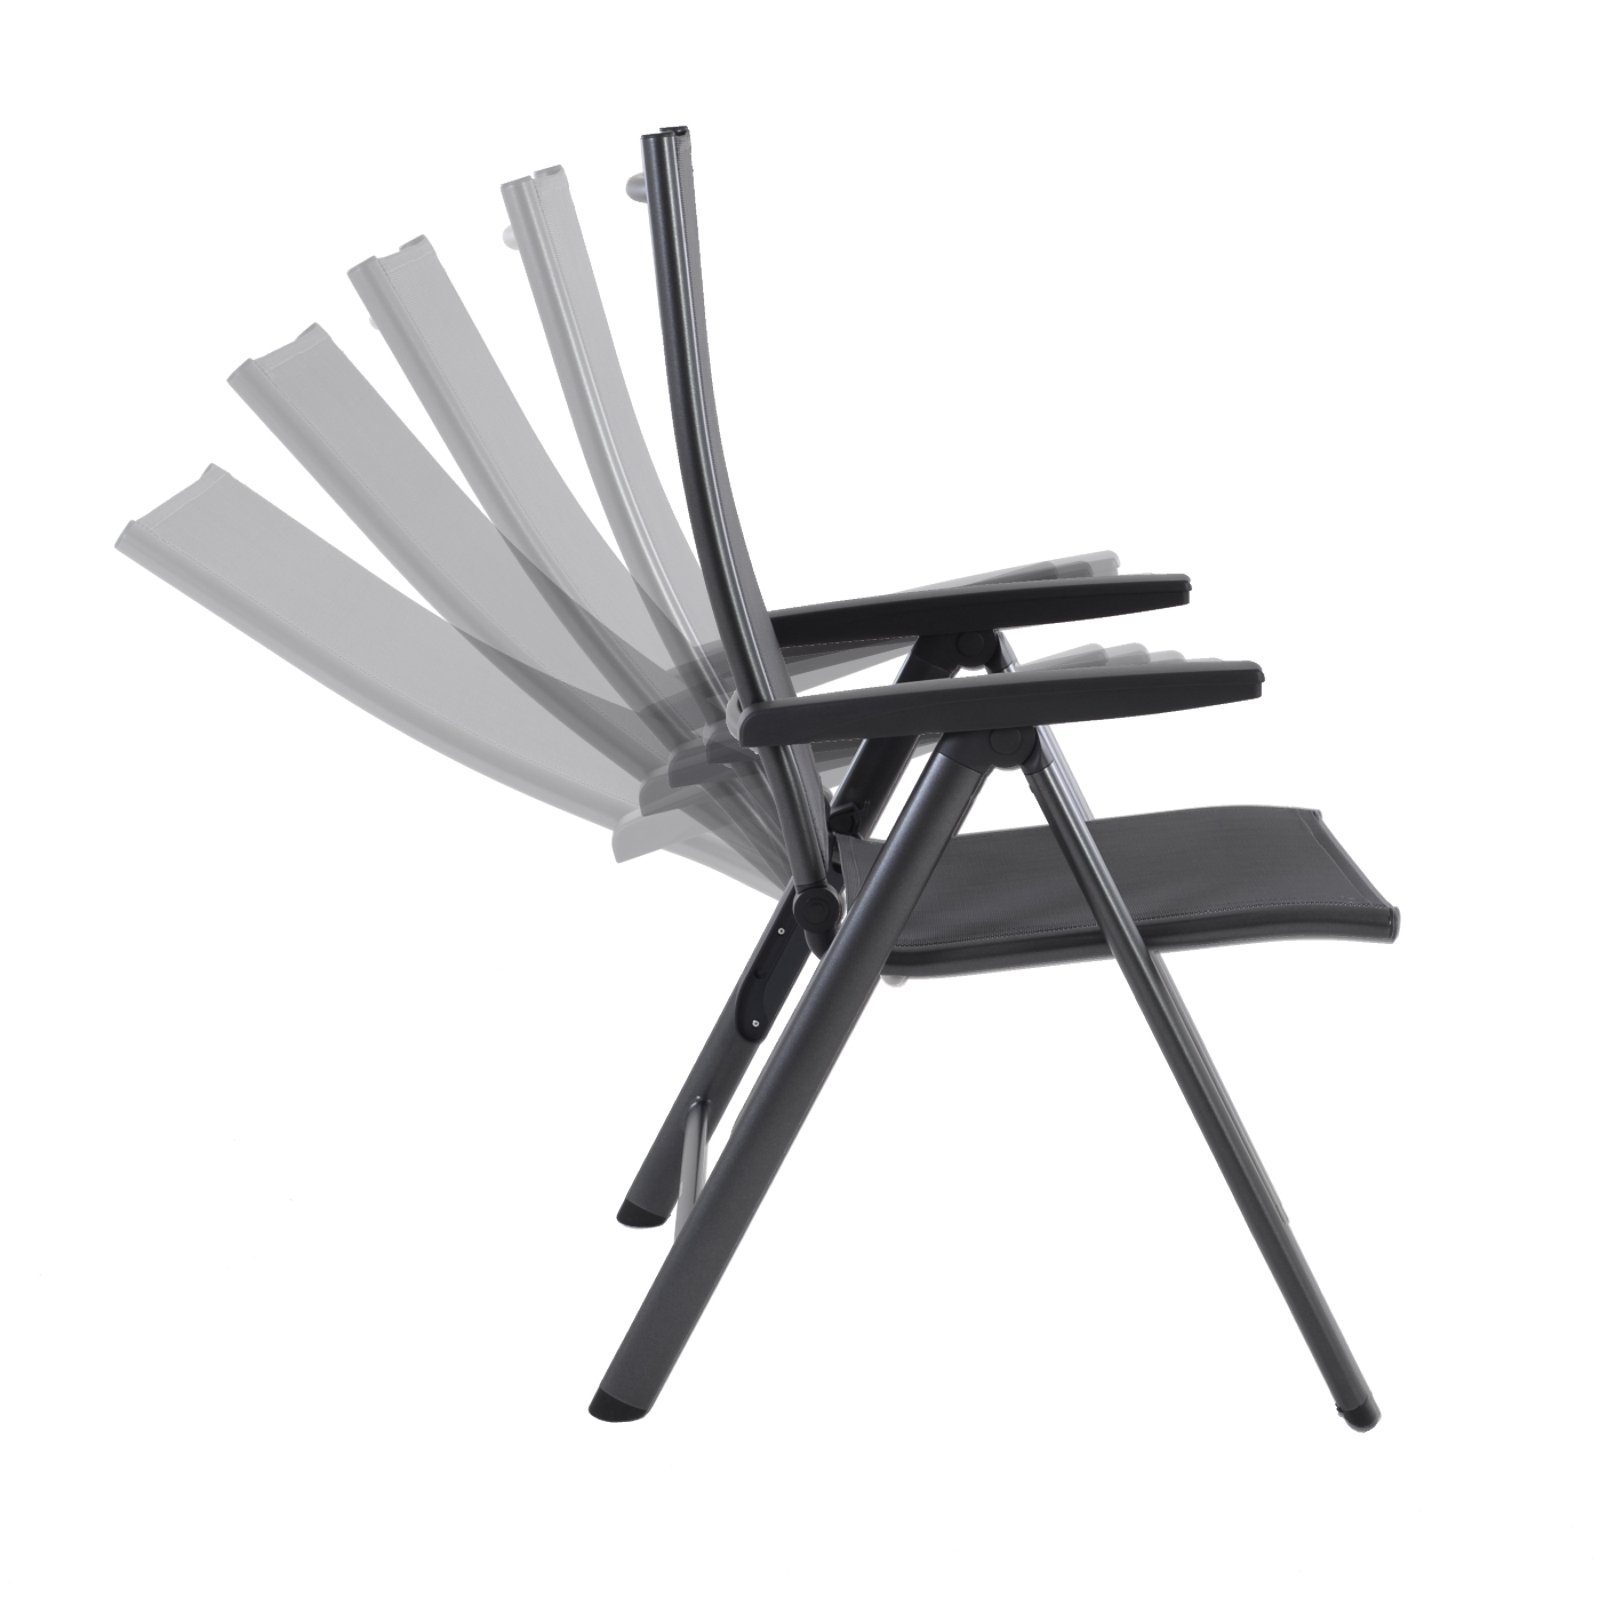 Kettler Gartenstuhl »Cirrus - klappbarer Essstuhl aus Aluminium in  ANTHRAZIT & Textilgewebe in GRAU, 5 -fach verstellbar, 150 kg Tragkraft mit  Klappsicherung«, Wasserdurchlässiges, schnell trocknendes Textilgewebe